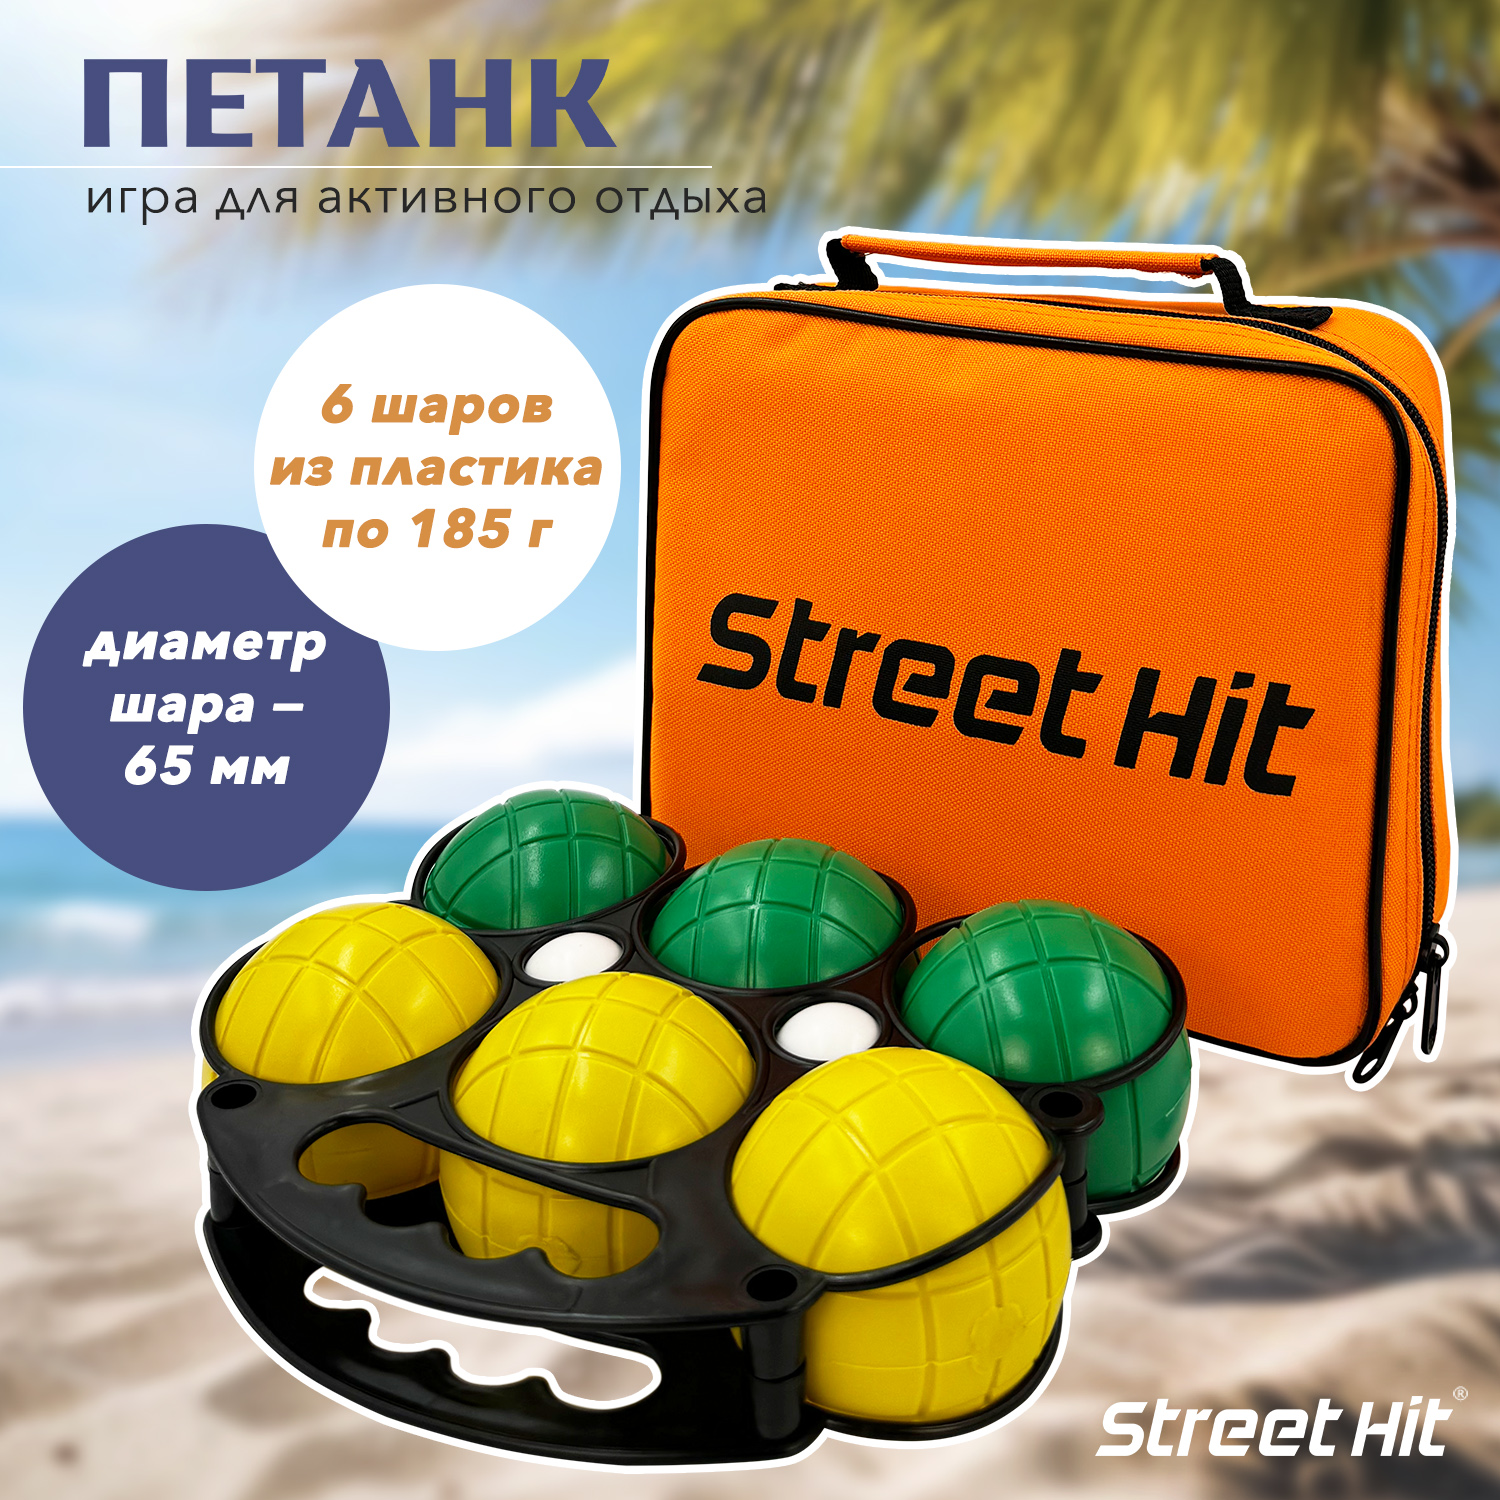 Набор для игры Street Набор для игры Street Hit Петанк, 6 шаров из пластика, синий+зеленый